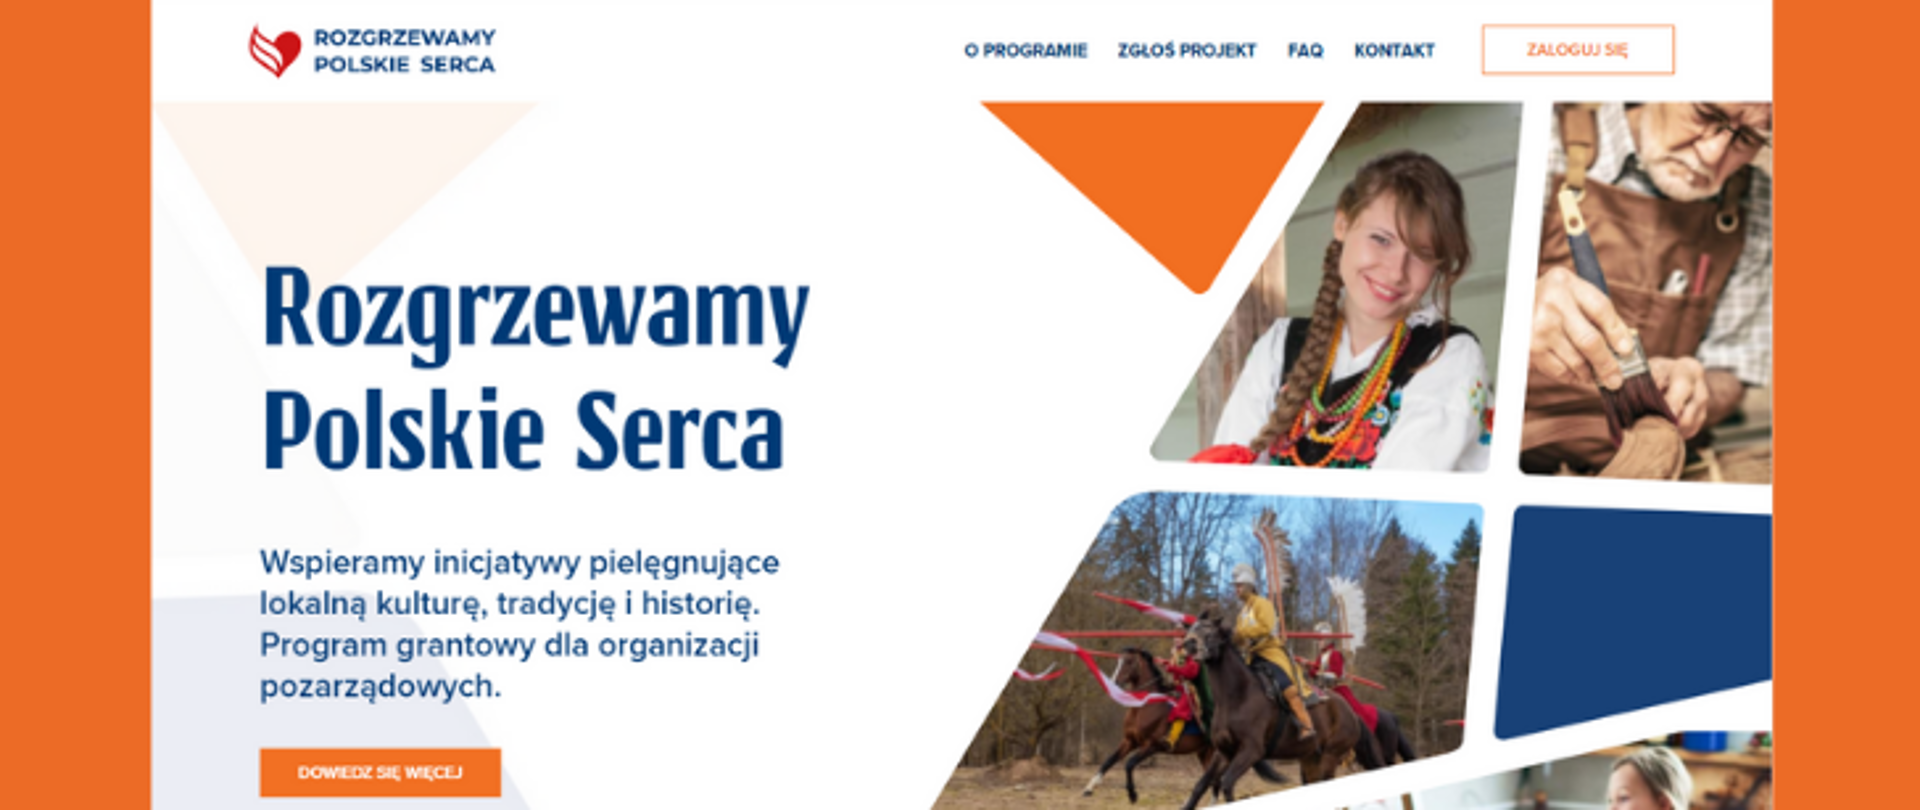 na pomarańczowym tle znajduje się screen z głównej storny www.rozgrzewamypolskieserca.pl na którym znajduje się grafikaze zdjęciami, a po lewej stronie jest tekst